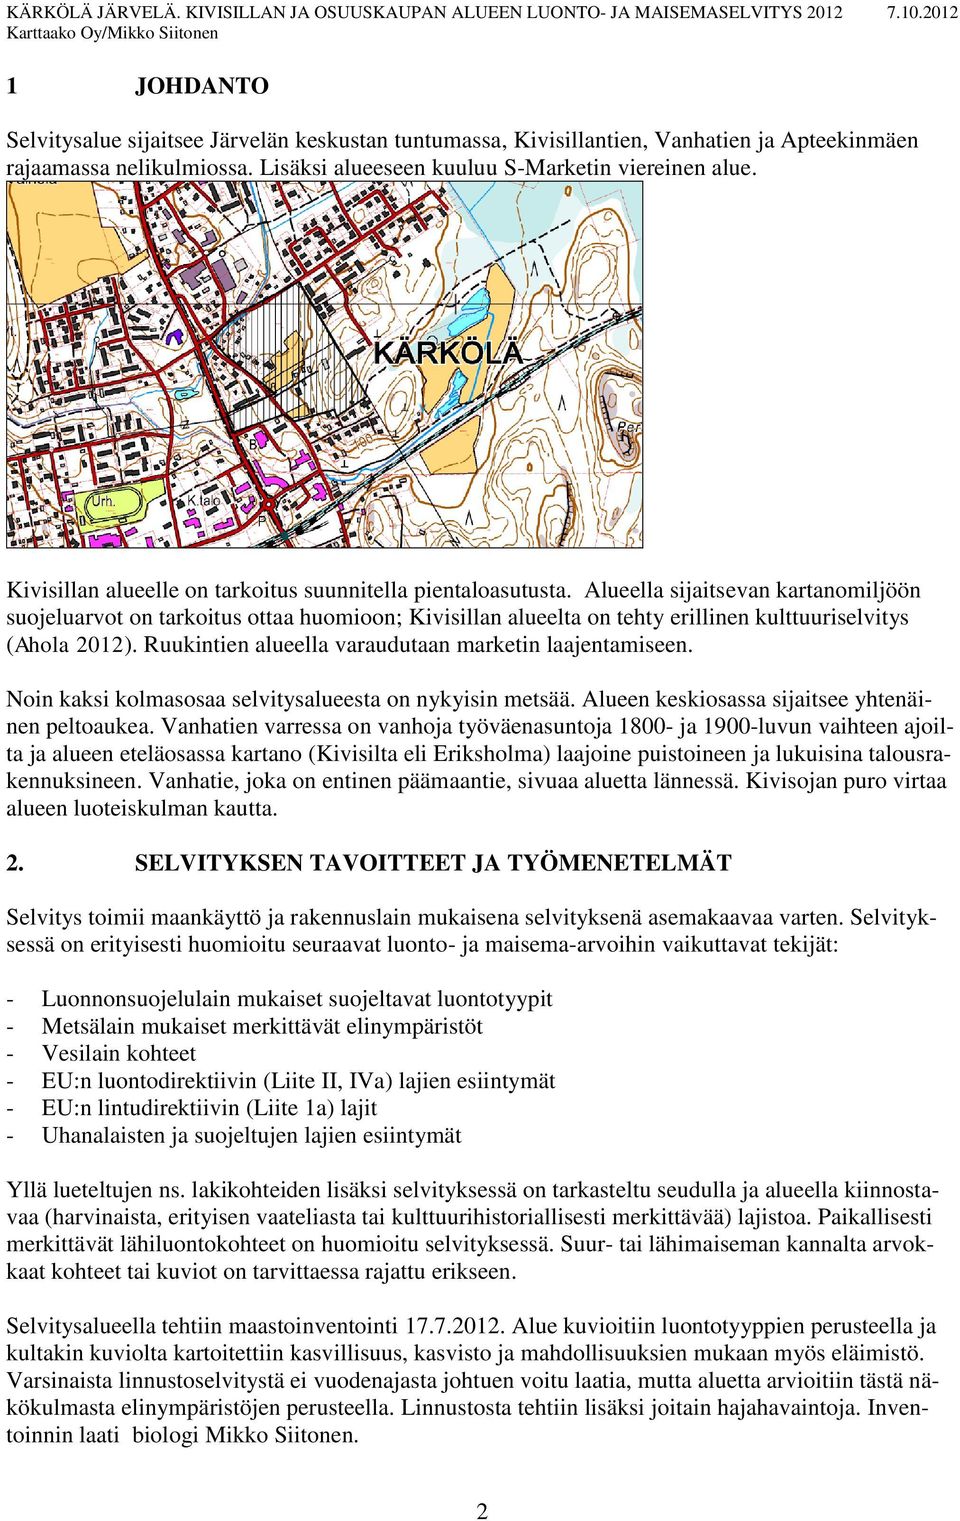 Alueella sijaitsevan kartanomiljöön suojeluarvot on tarkoitus ottaa huomioon; Kivisillan alueelta on tehty erillinen kulttuuriselvitys (Ahola 2012).